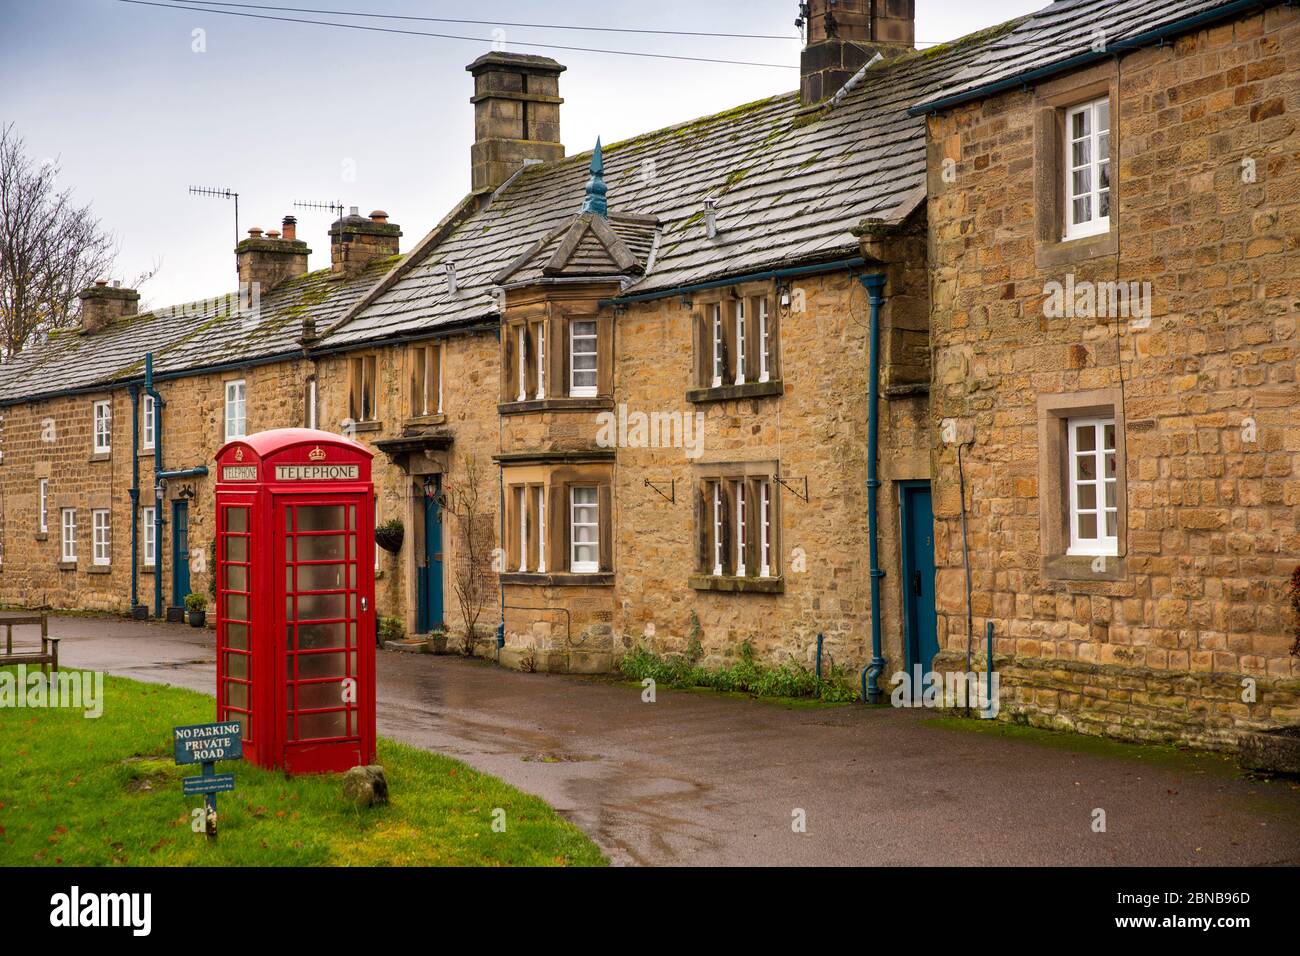 UK, England, Derbyshire, Pilsley, old K6 phone box outside Chatsworth Estate village stone houses Stock Photo